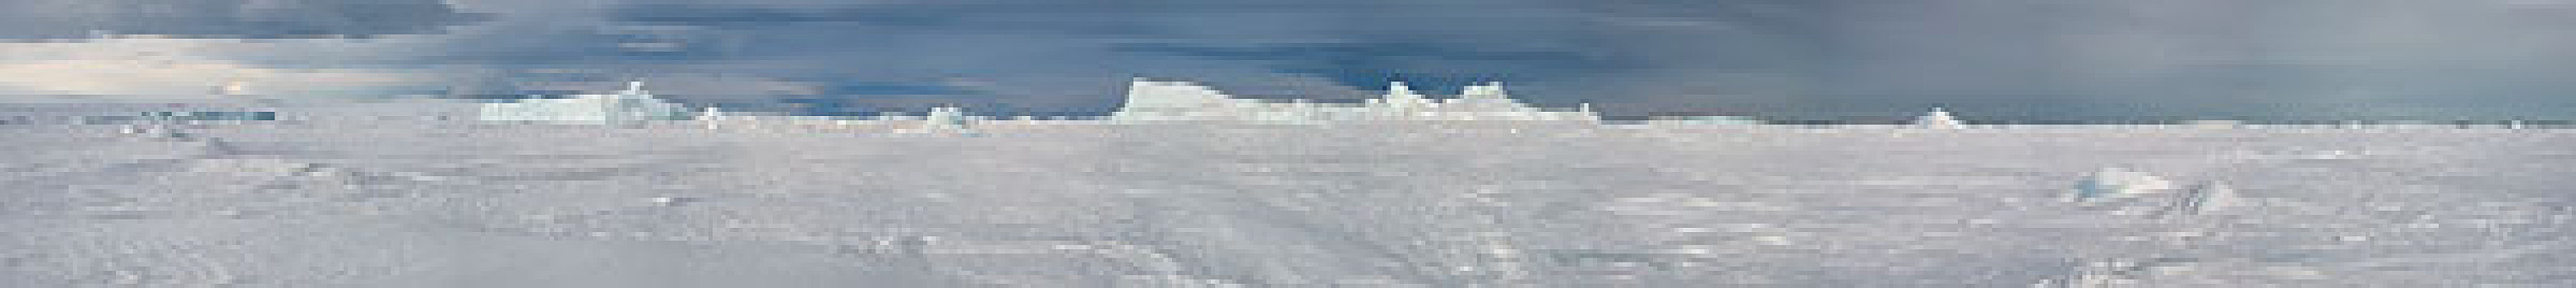 南极,威德尔海,靠近,雪丘岛,全景,海冰,冰山